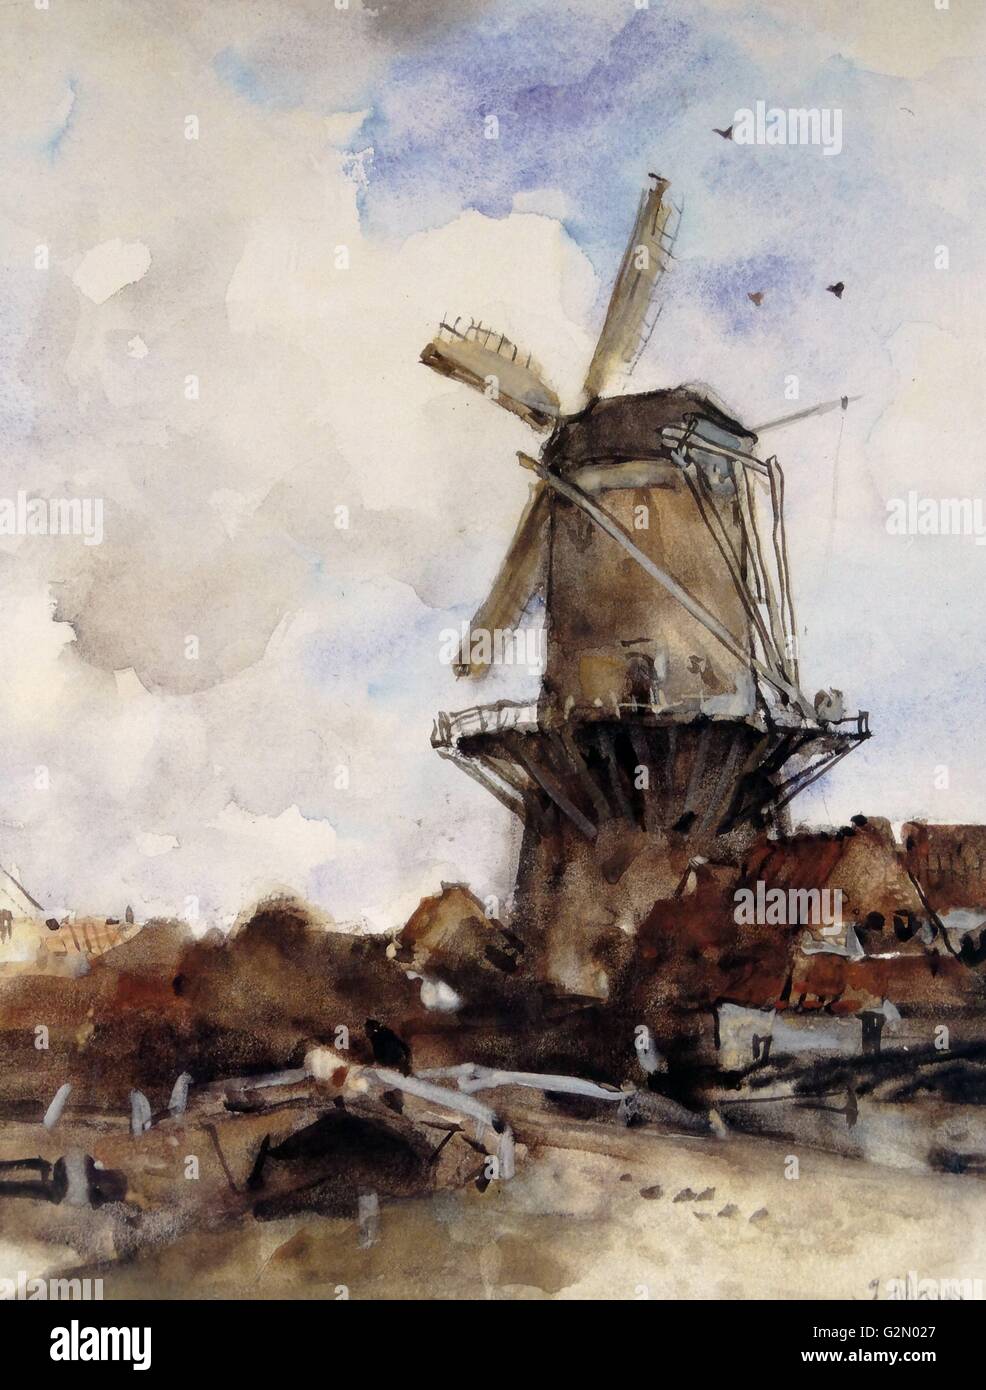 Aquarell von der niederländischen Künstler Jacob Maris (25. August 1837 - 7. August 1899) Die Arbeit mit dem Titel "Die alte Mühle". Abgeschlossen. c 1885. Stockfoto